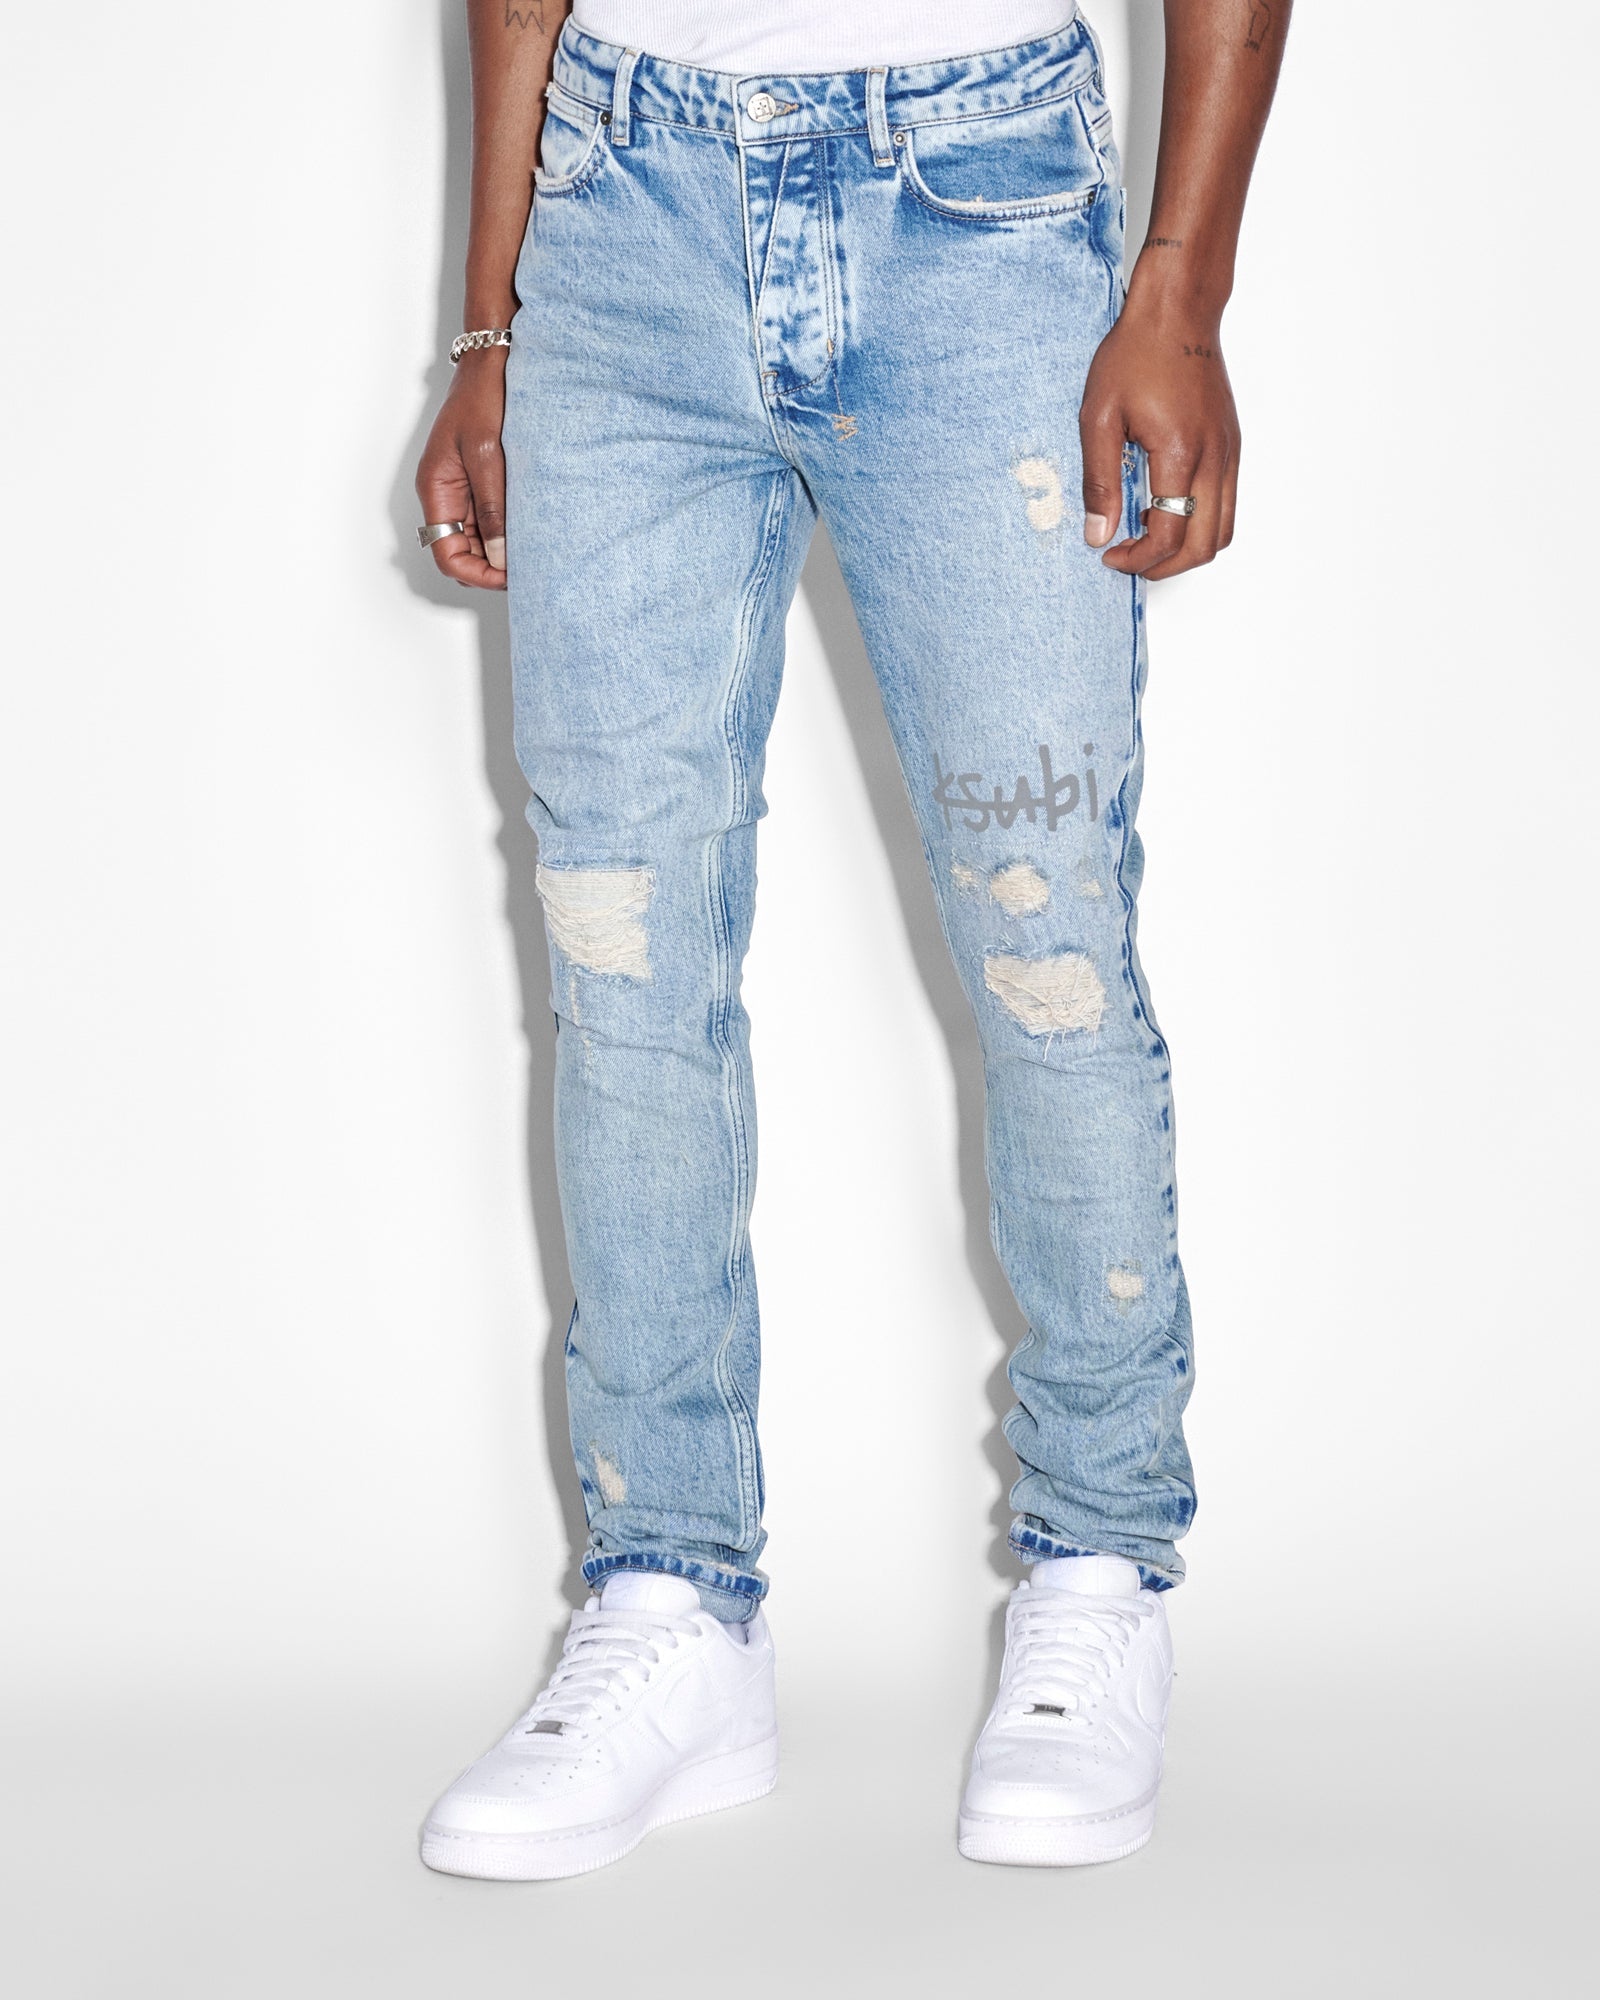 Mens Jeans | Denim Designer Jeans for Men | Taelor Boutique